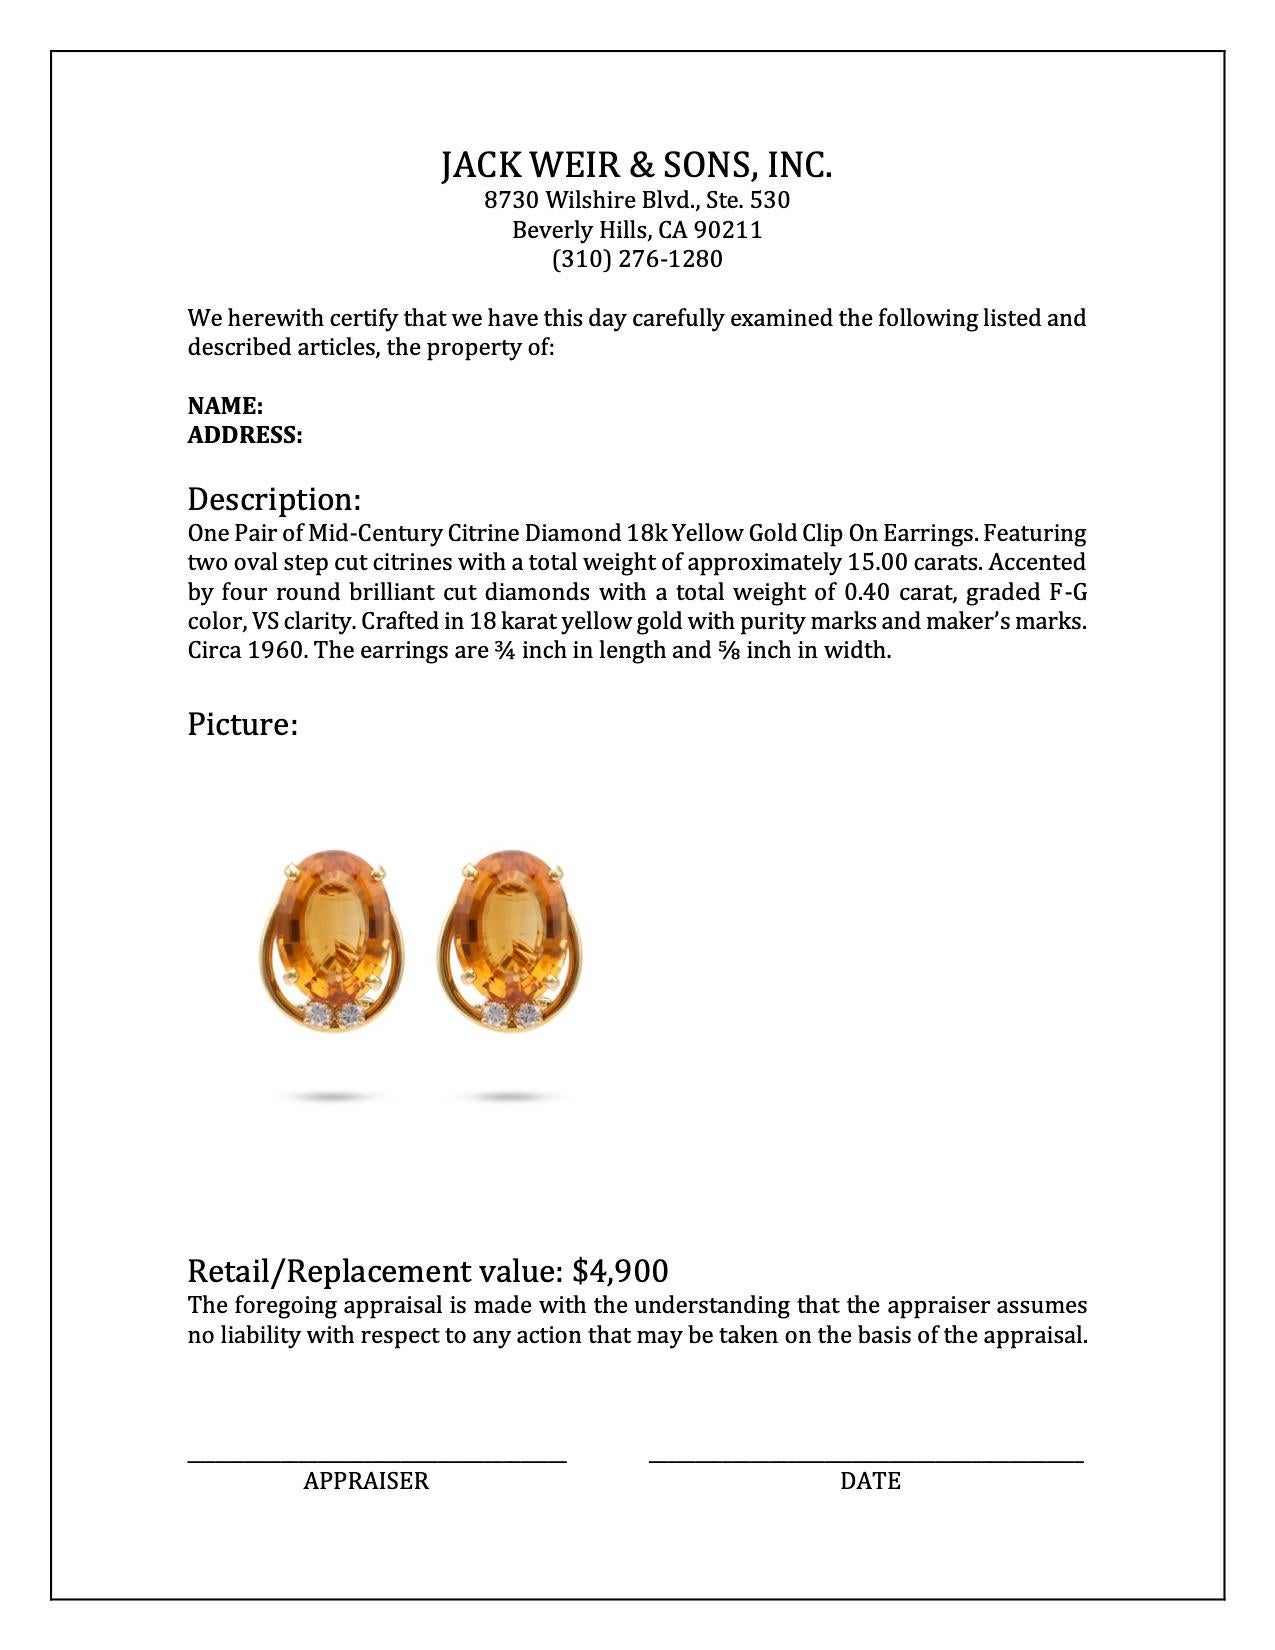 Women's or Men's Mid-Century Citrine Diamond 18k Yellow Gold Clip On Earrings For Sale